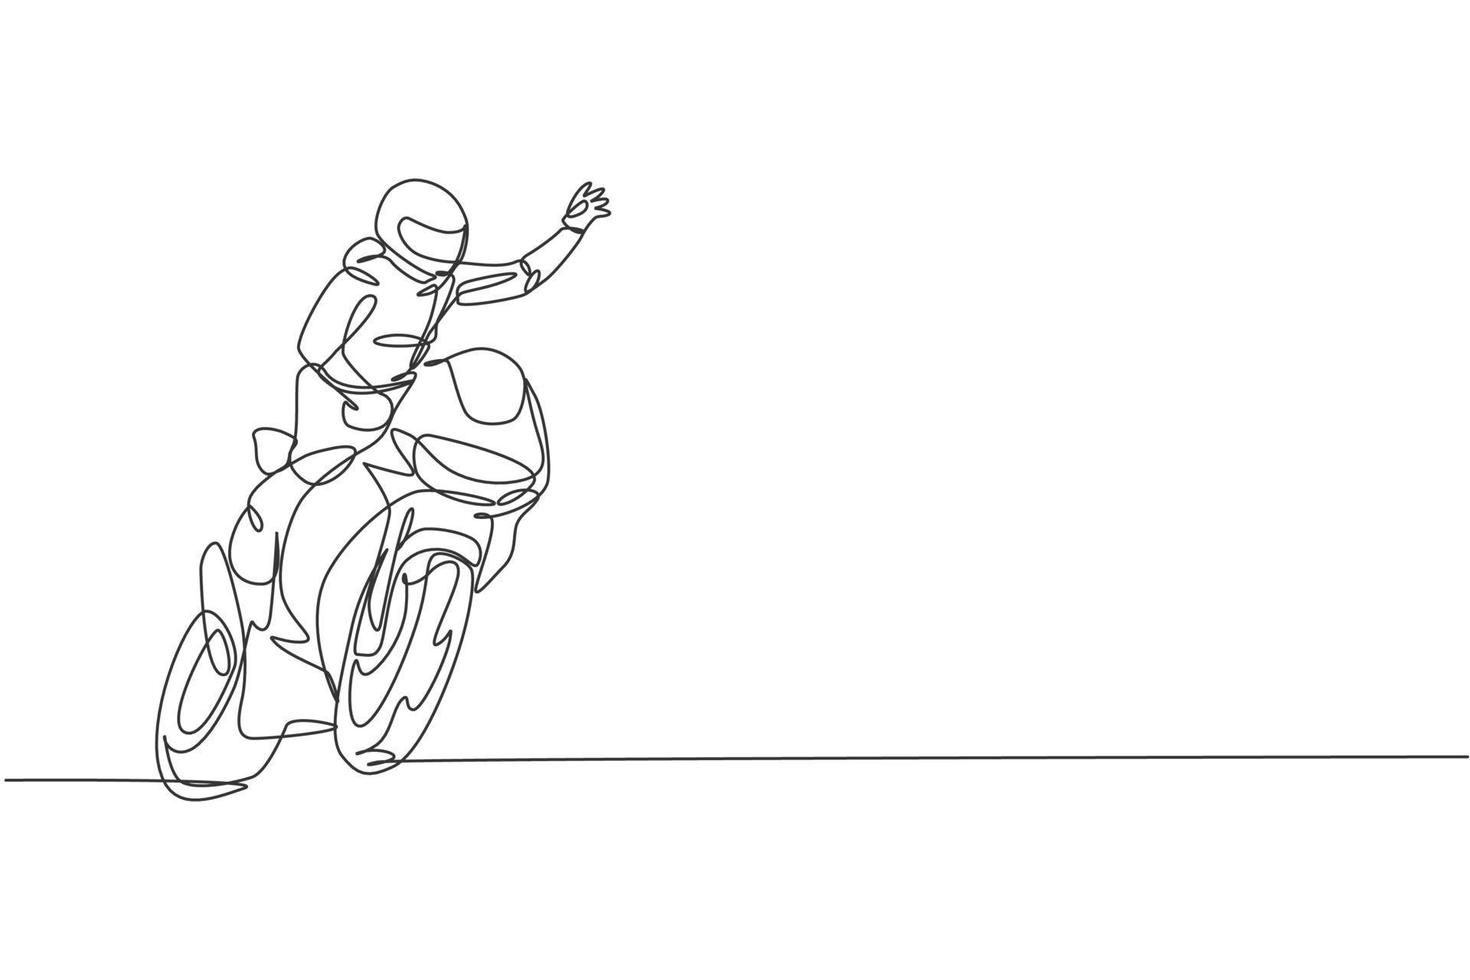 een doorlopende lijntekening van een jonge motorcoureur zwaait met zijn hand naar de toeschouwers. super fiets race concept grafische vectorillustratie. dynamisch ontwerp met één lijntekening voor promotieposter voor motorraces vector